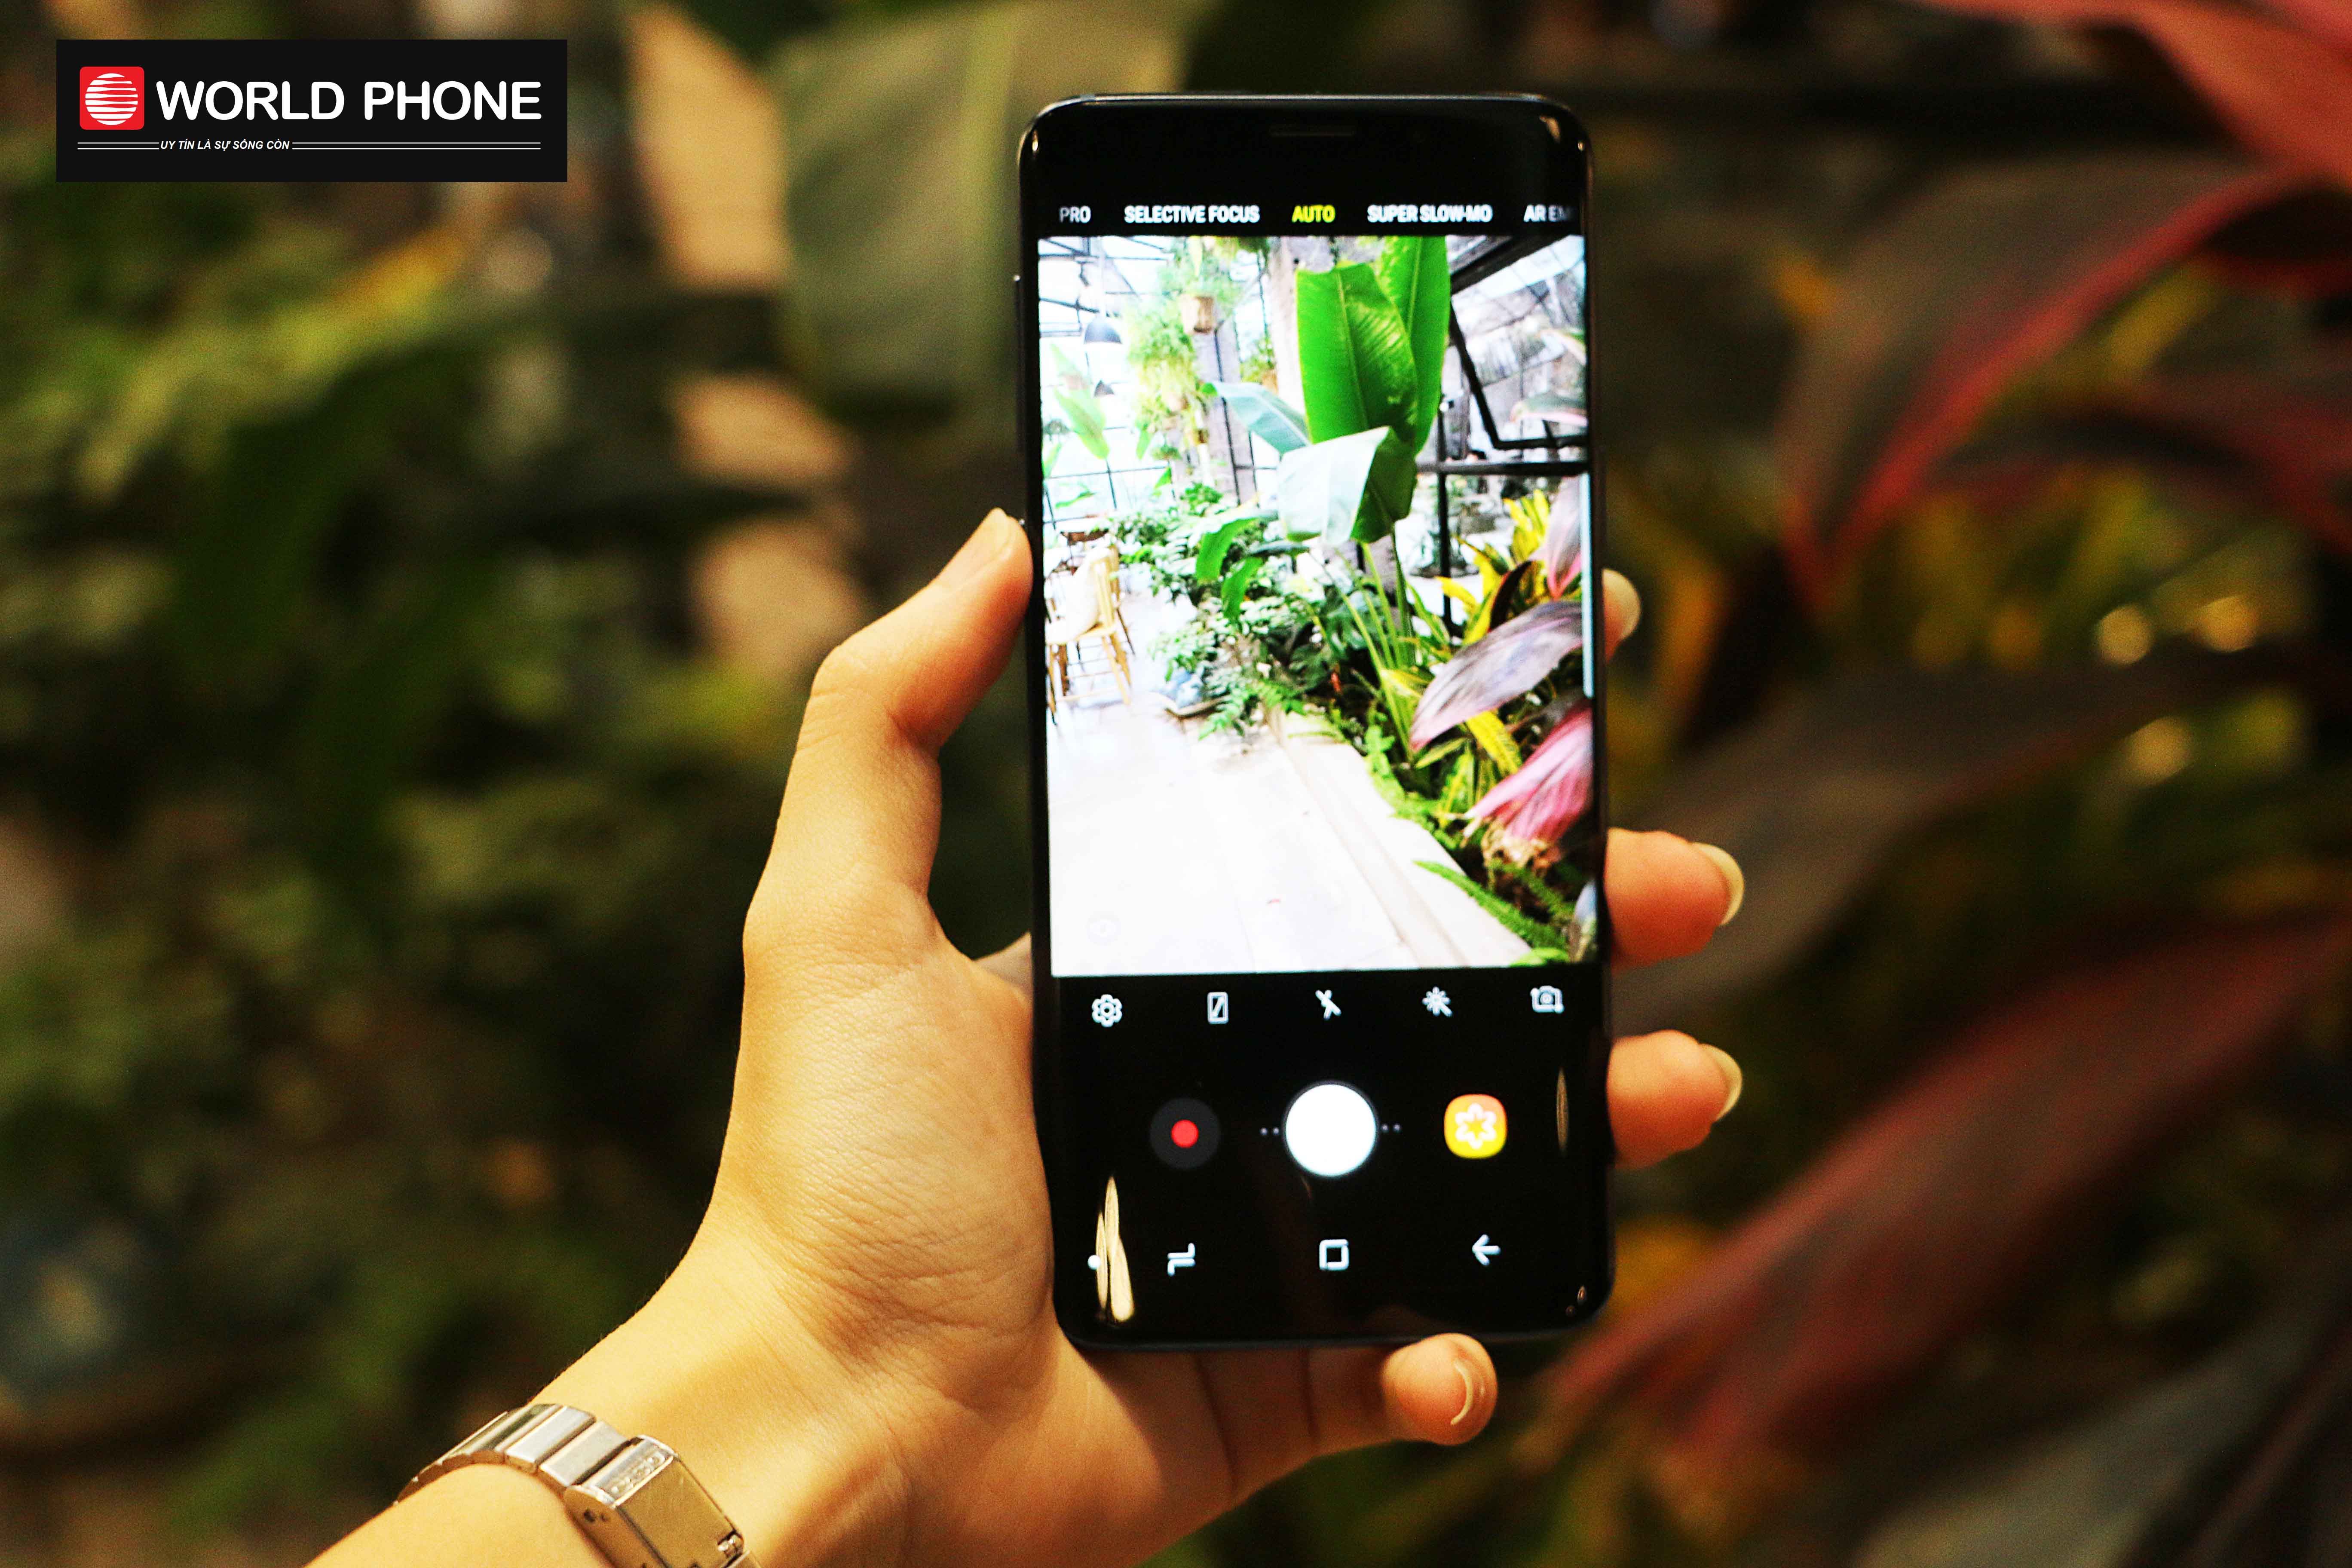 Galaxy S9 hội tụ đủ những yếu tố về camera mà một chiếc điện thoại phục vụ cho như cầu chụp ảnh giải trí cần có